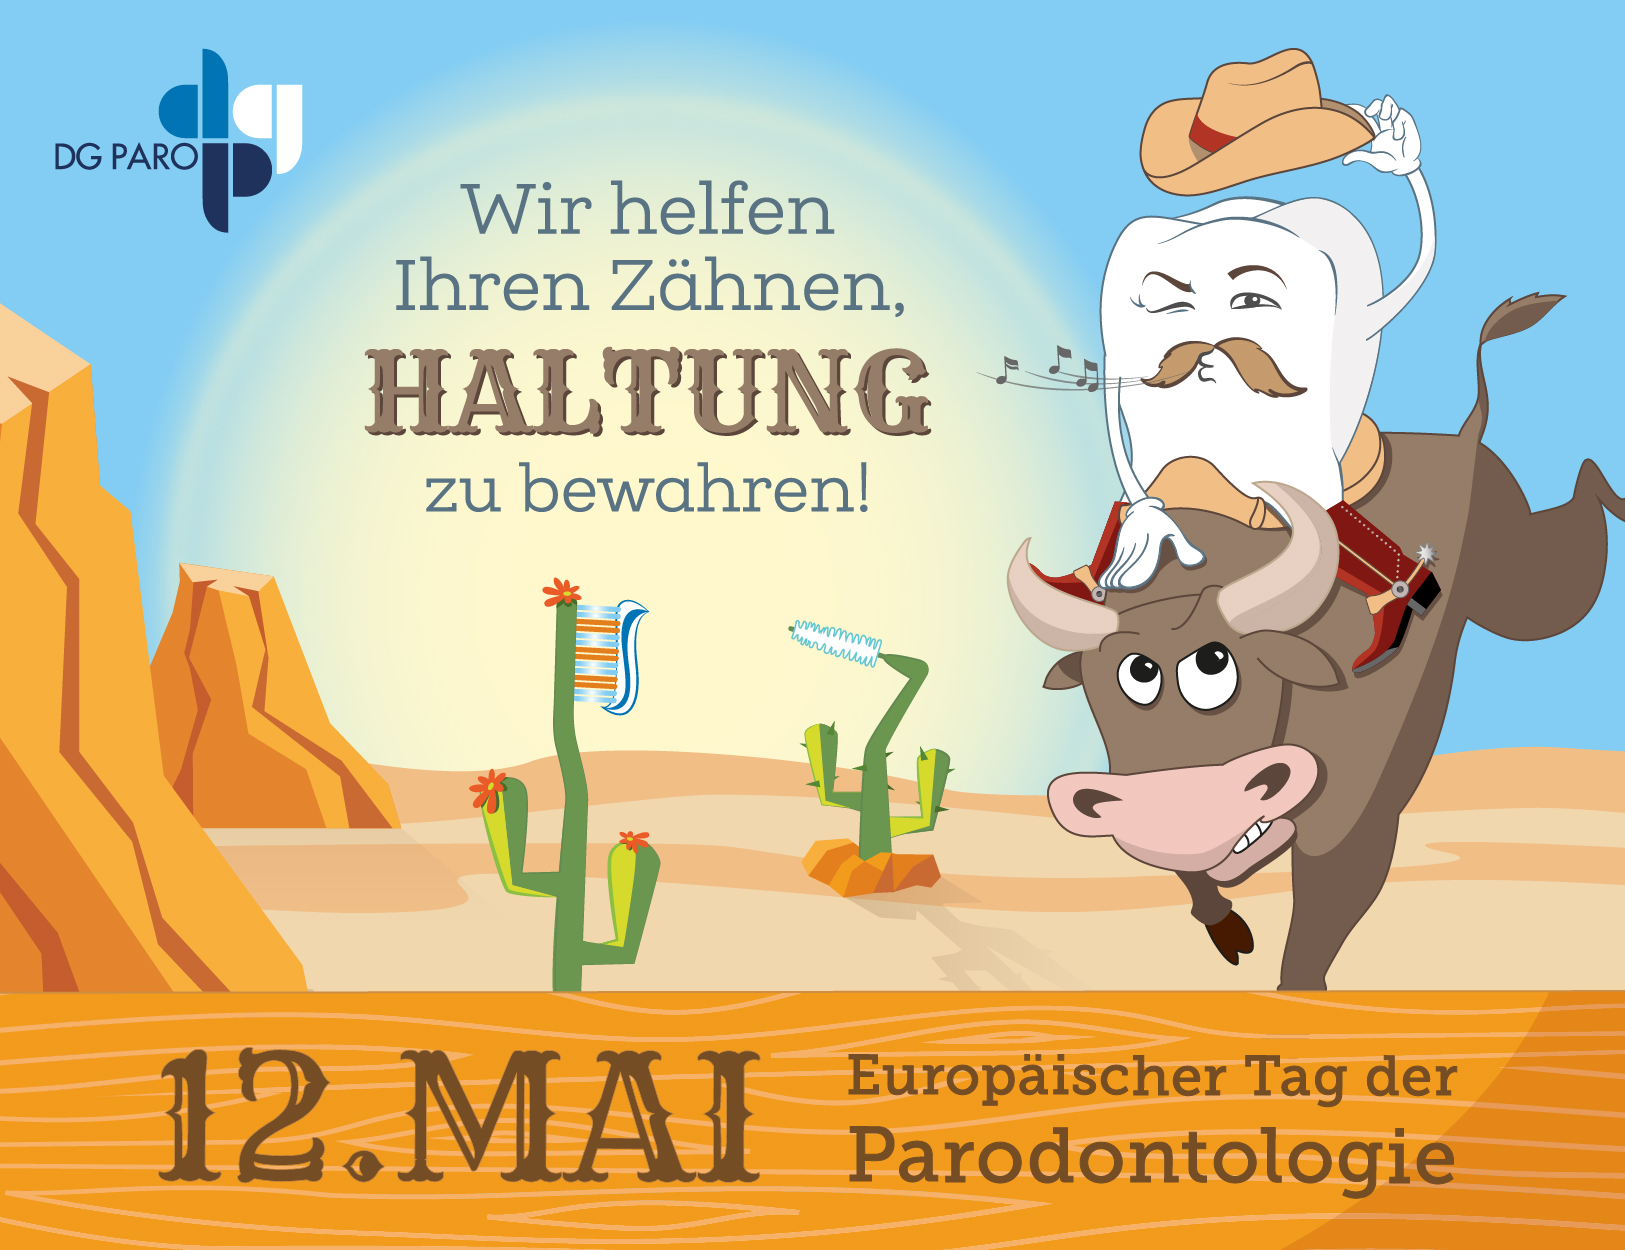 Europäischer Tag der Parodontologie